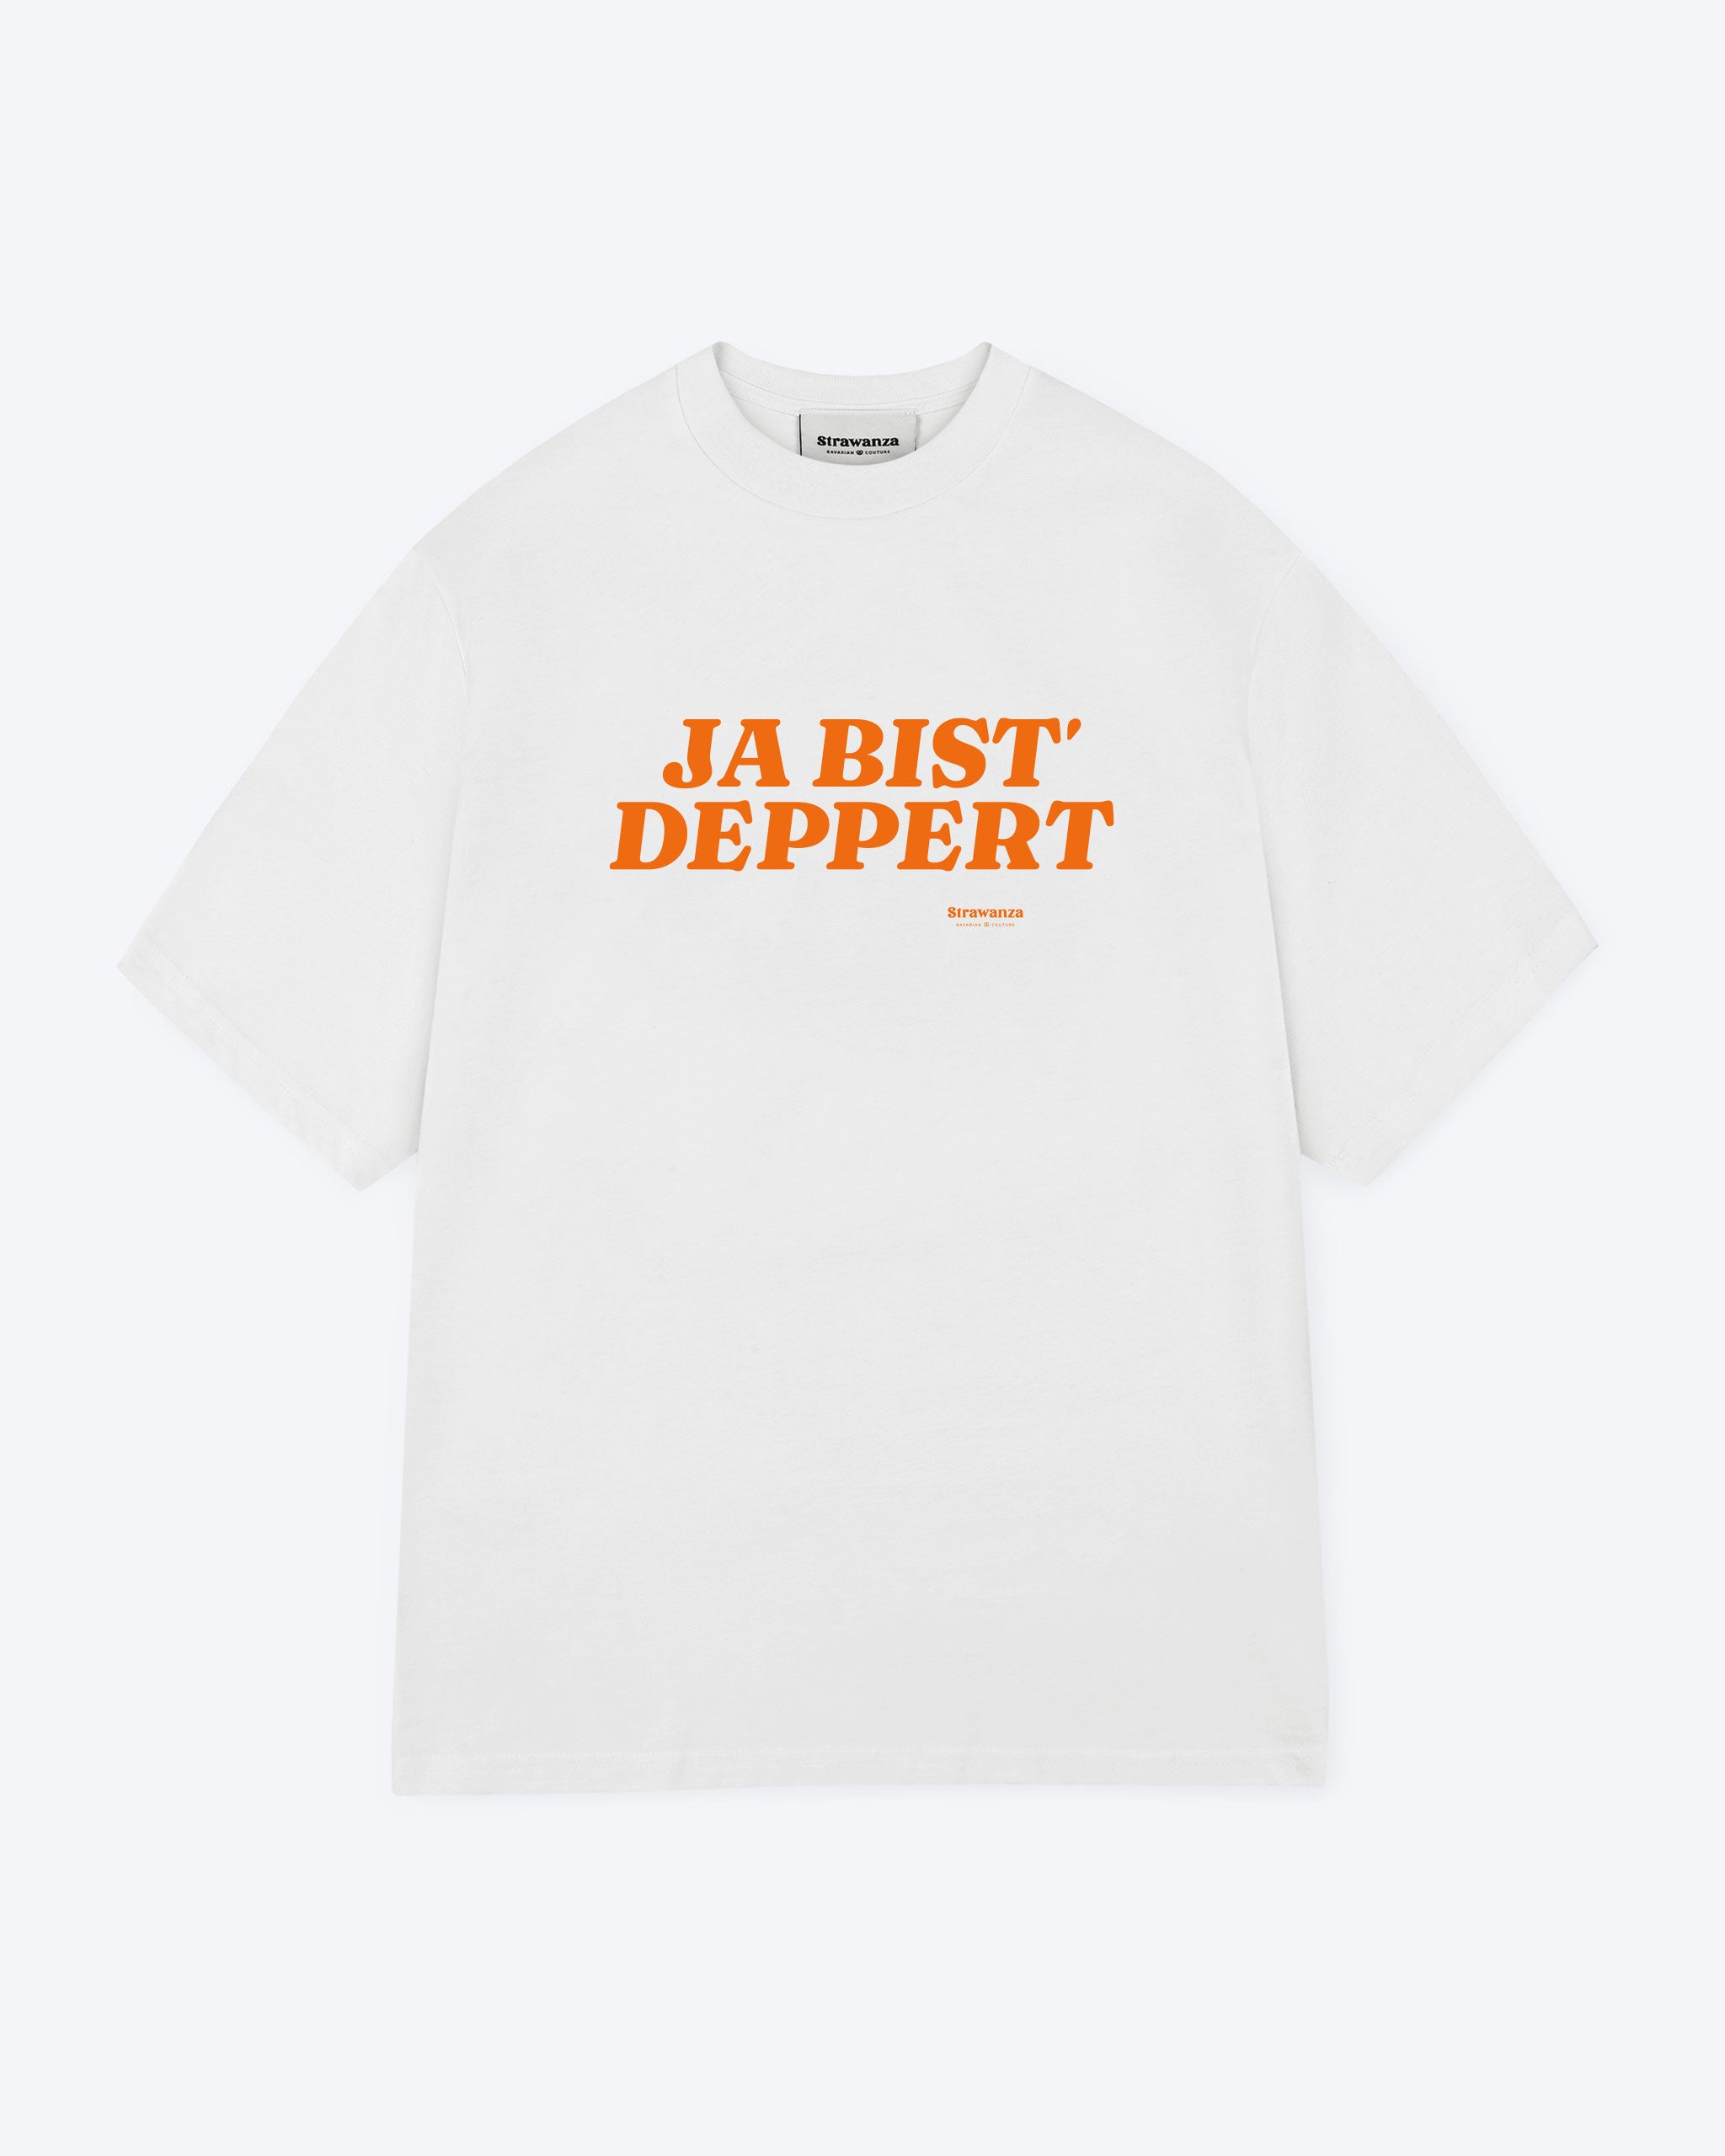 Ein weißes T-Shirt mit einem orangenen 